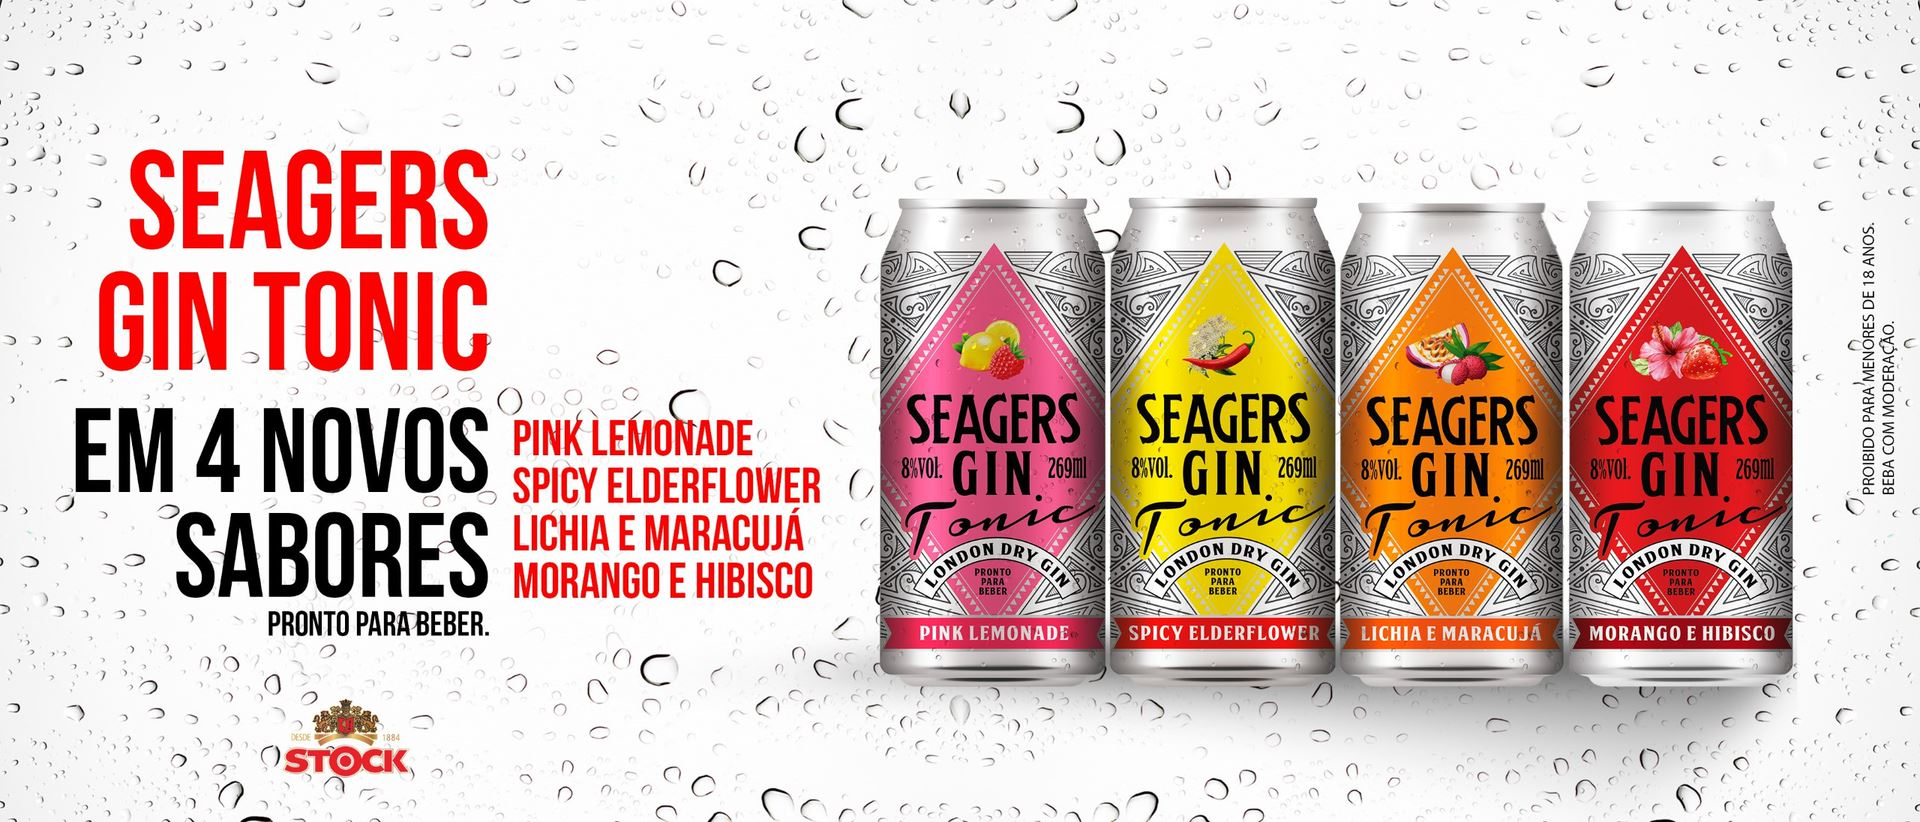 Stock do Brasil lança novos sabores de Seagers Gin Tonic